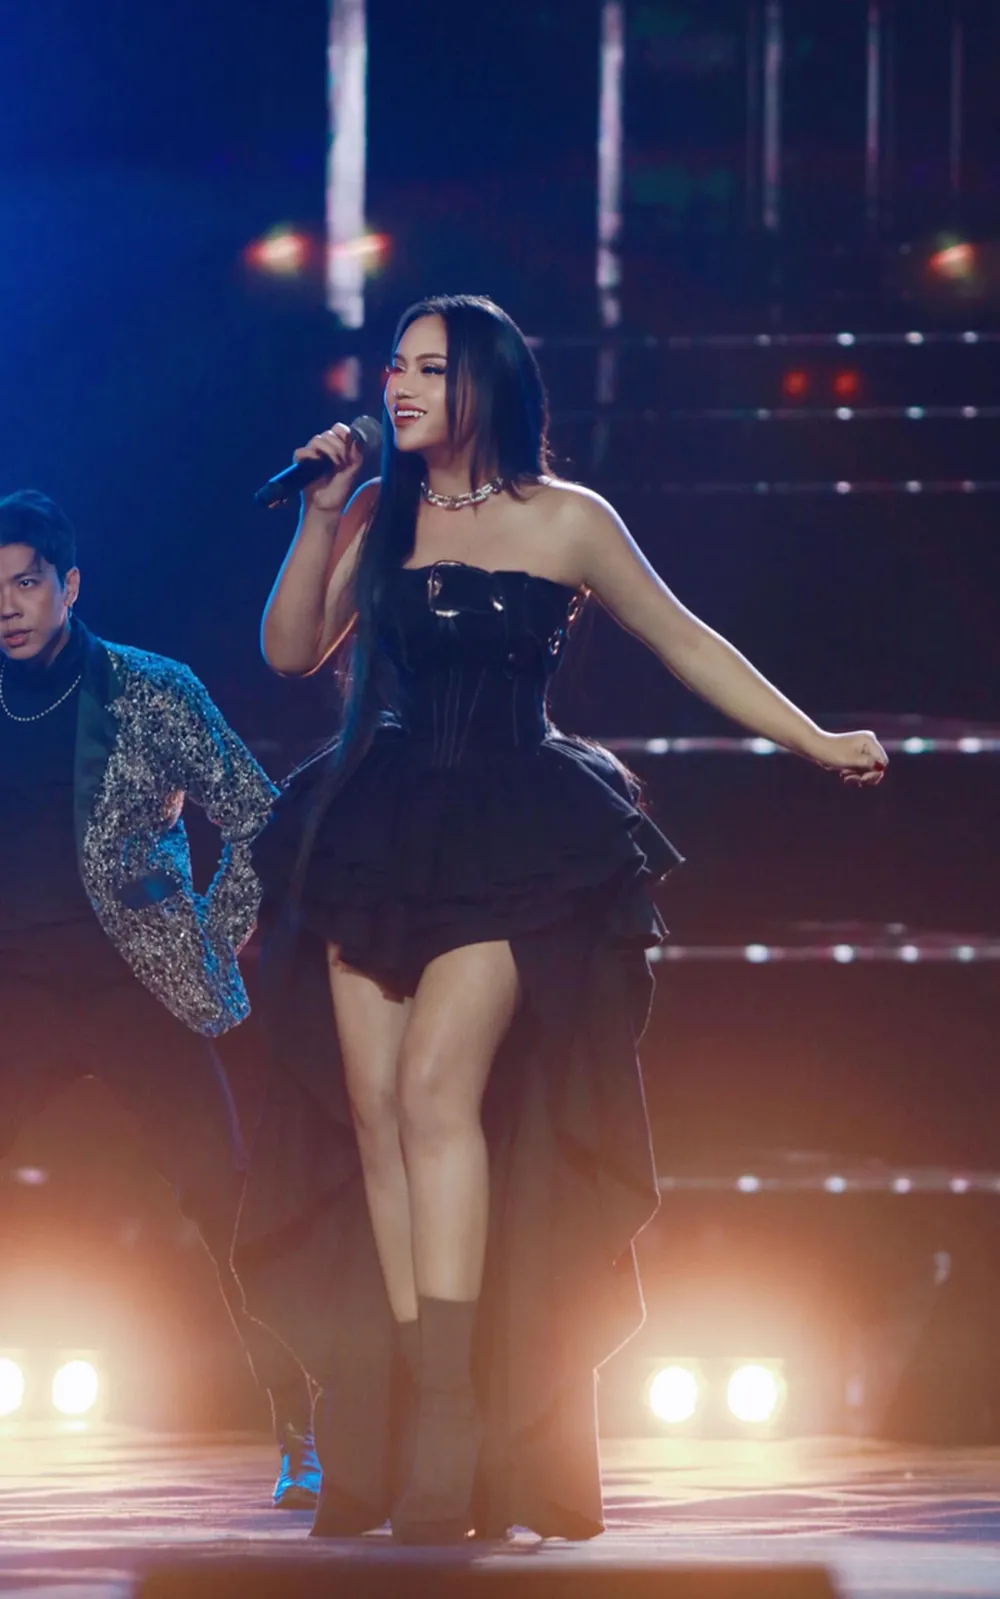 Shock vì bị bodyshaming khi đang biểu diễn, ca sĩ Sofia phải xin lỗi về sớm